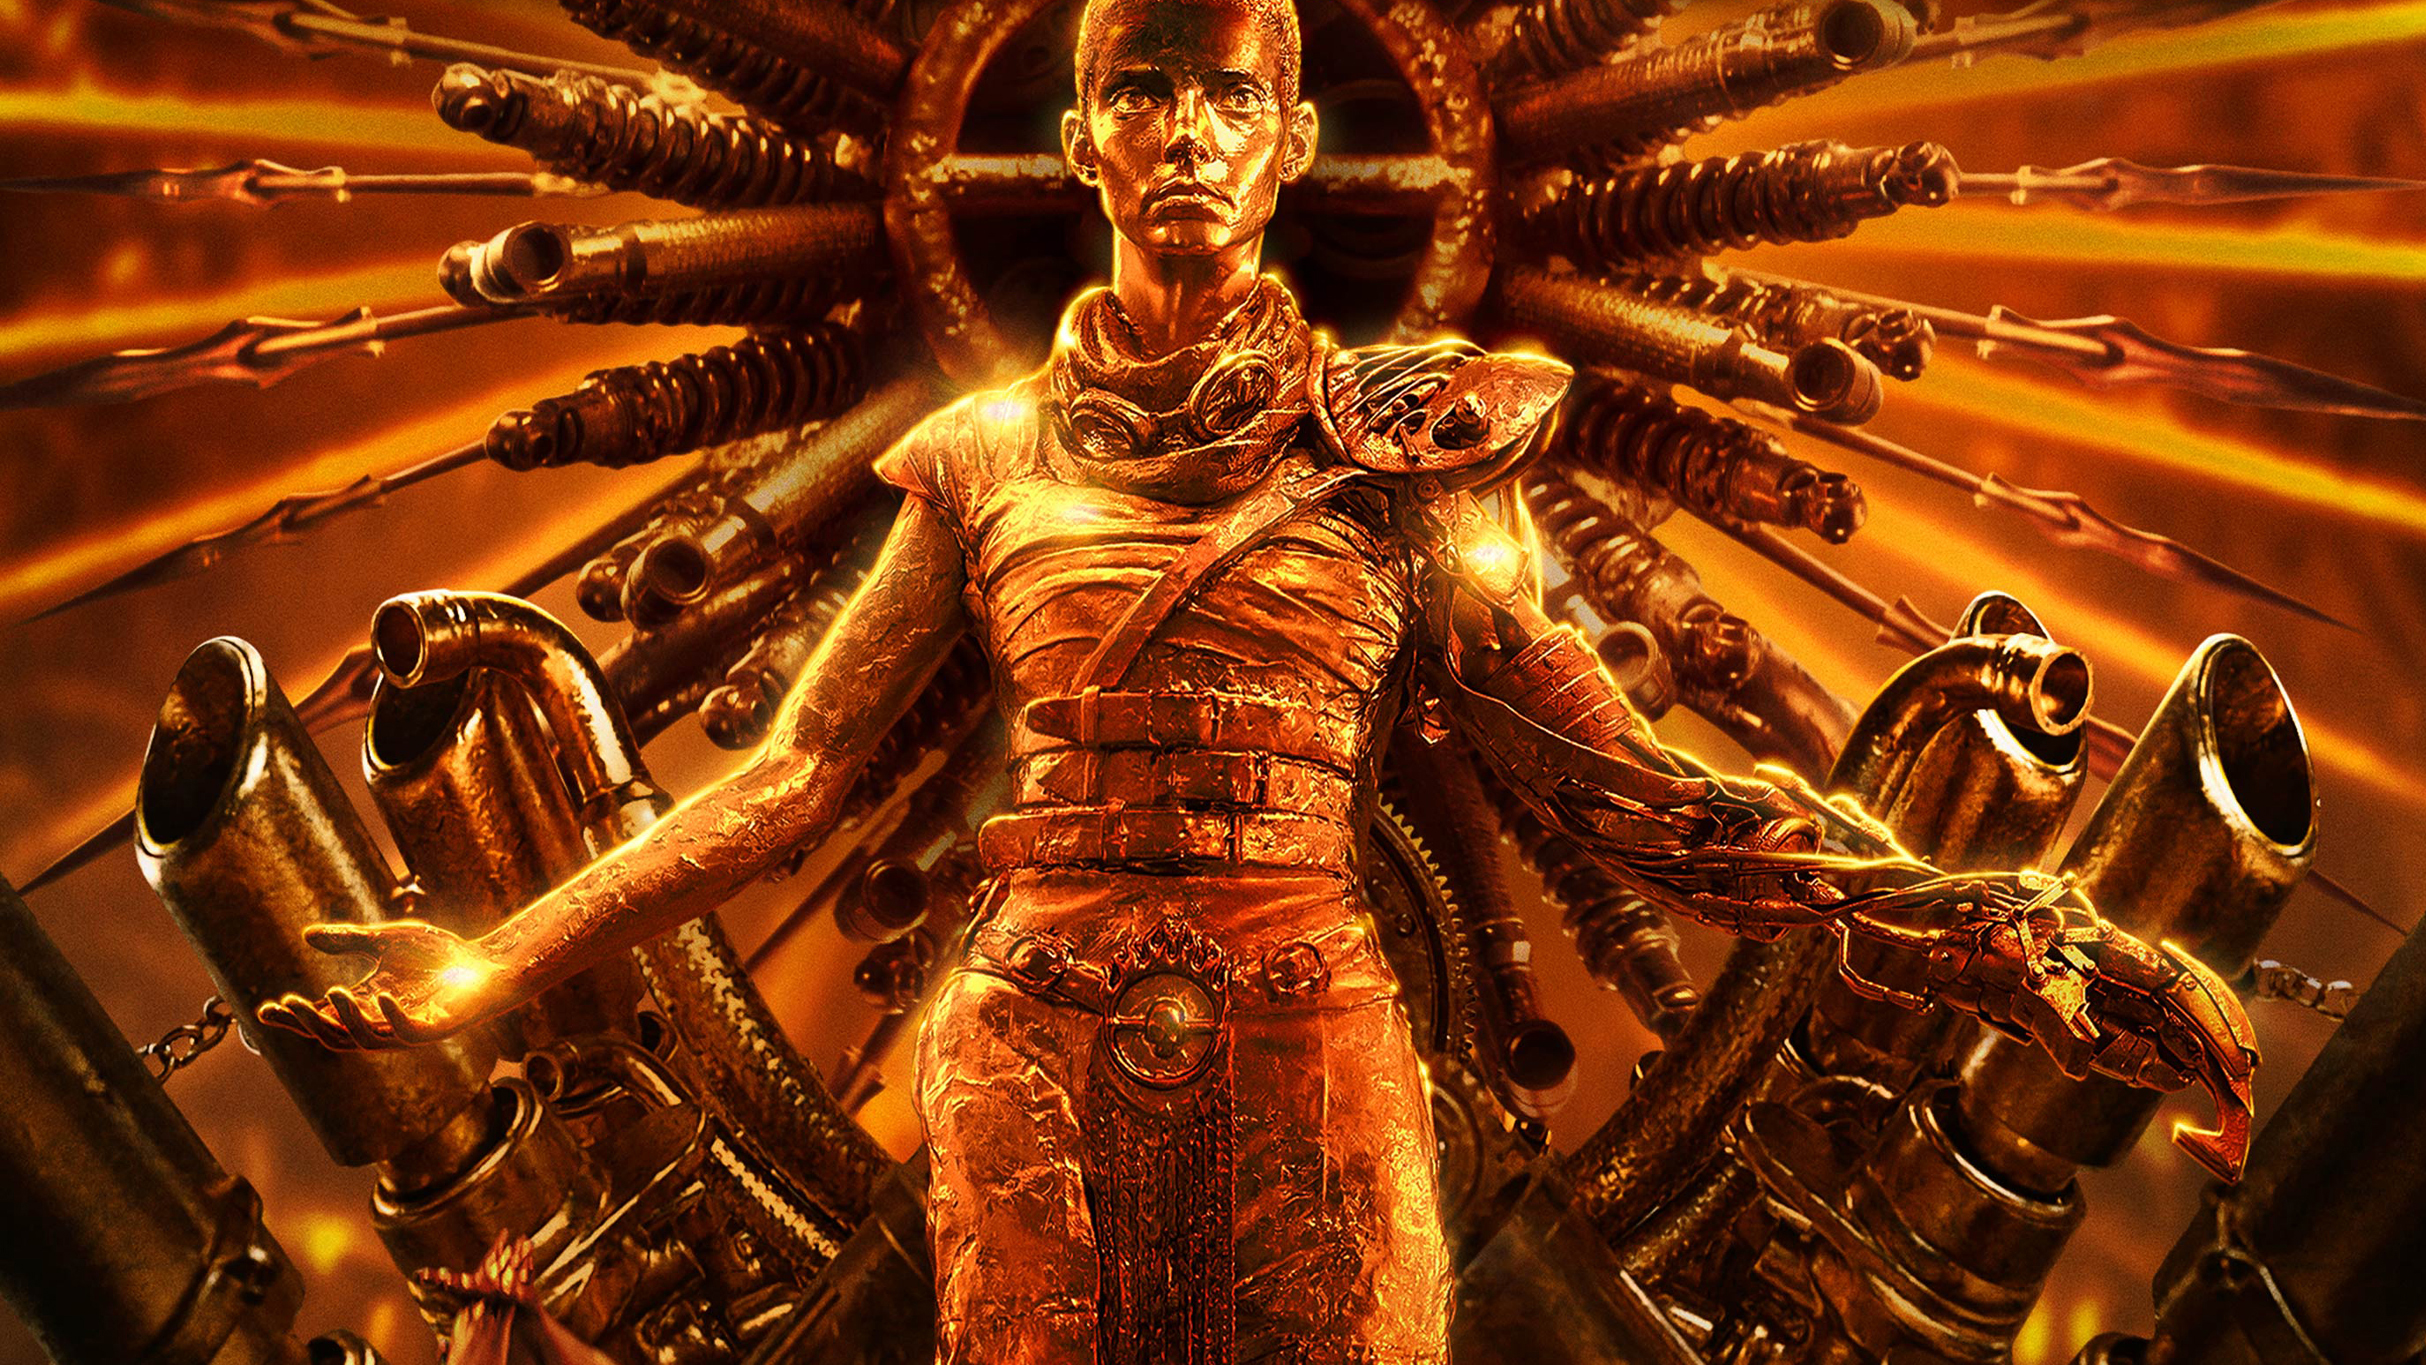 Furiosa: A Mad Max Saga - The IMAX Experience